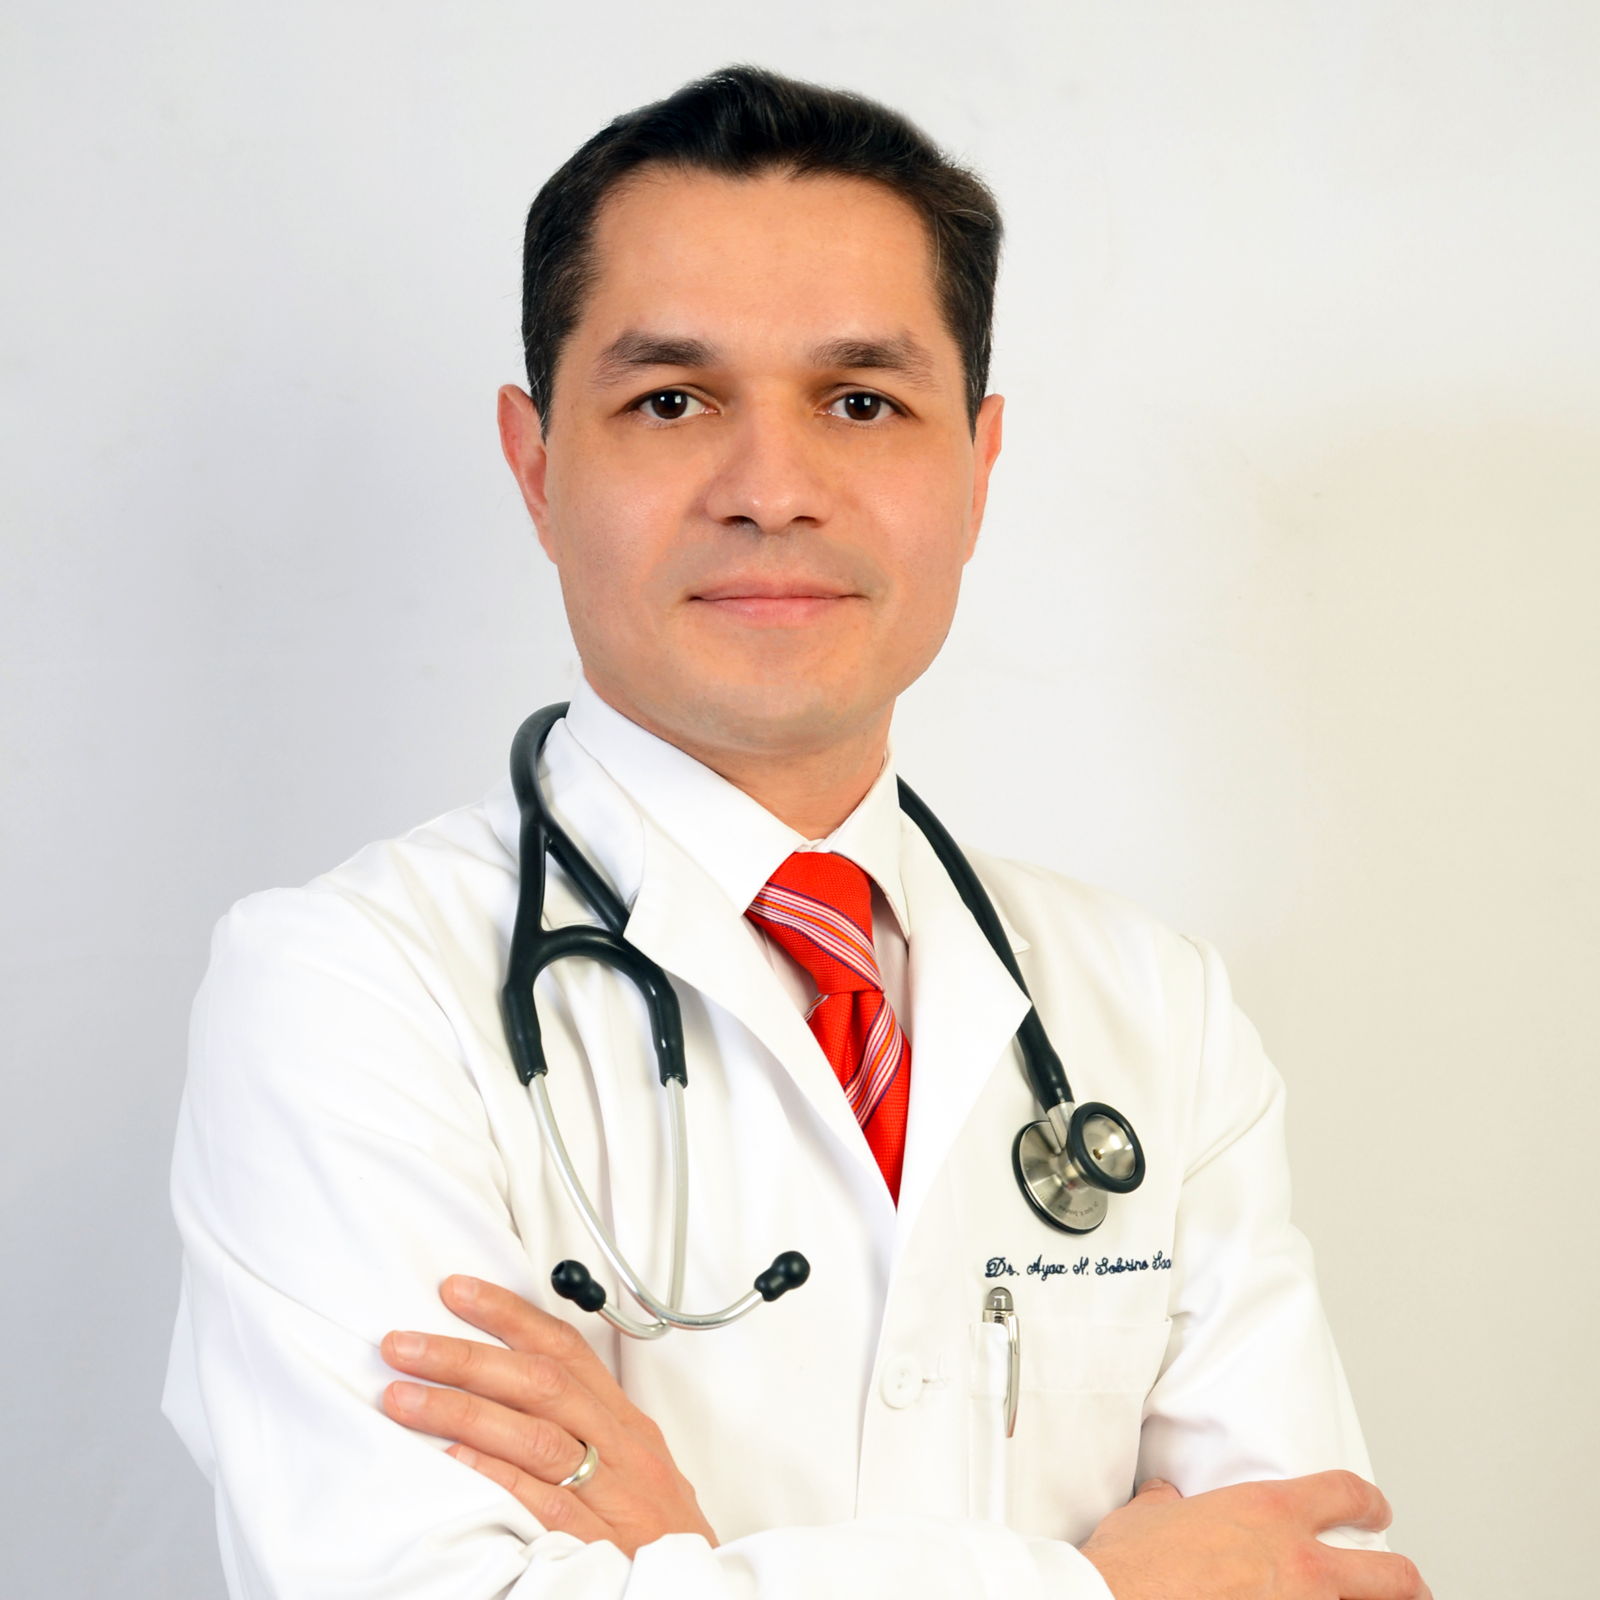 Dr. Ayax N. Sobrino Saavedra